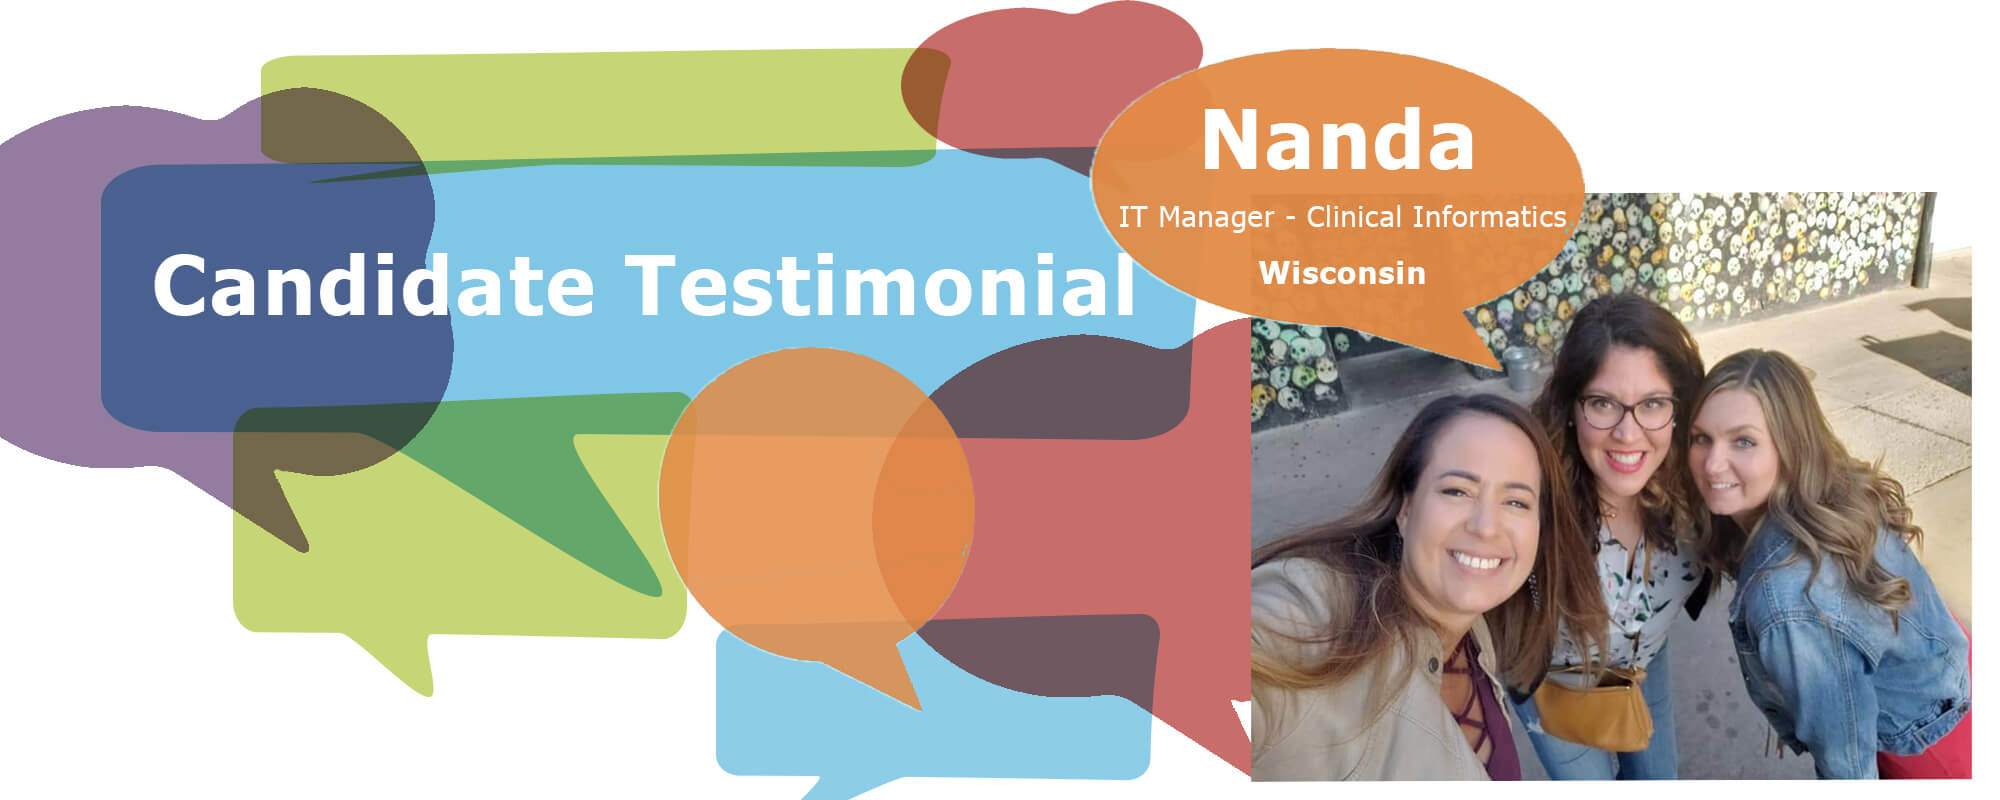 Candidate Testimonial: Nanda F.